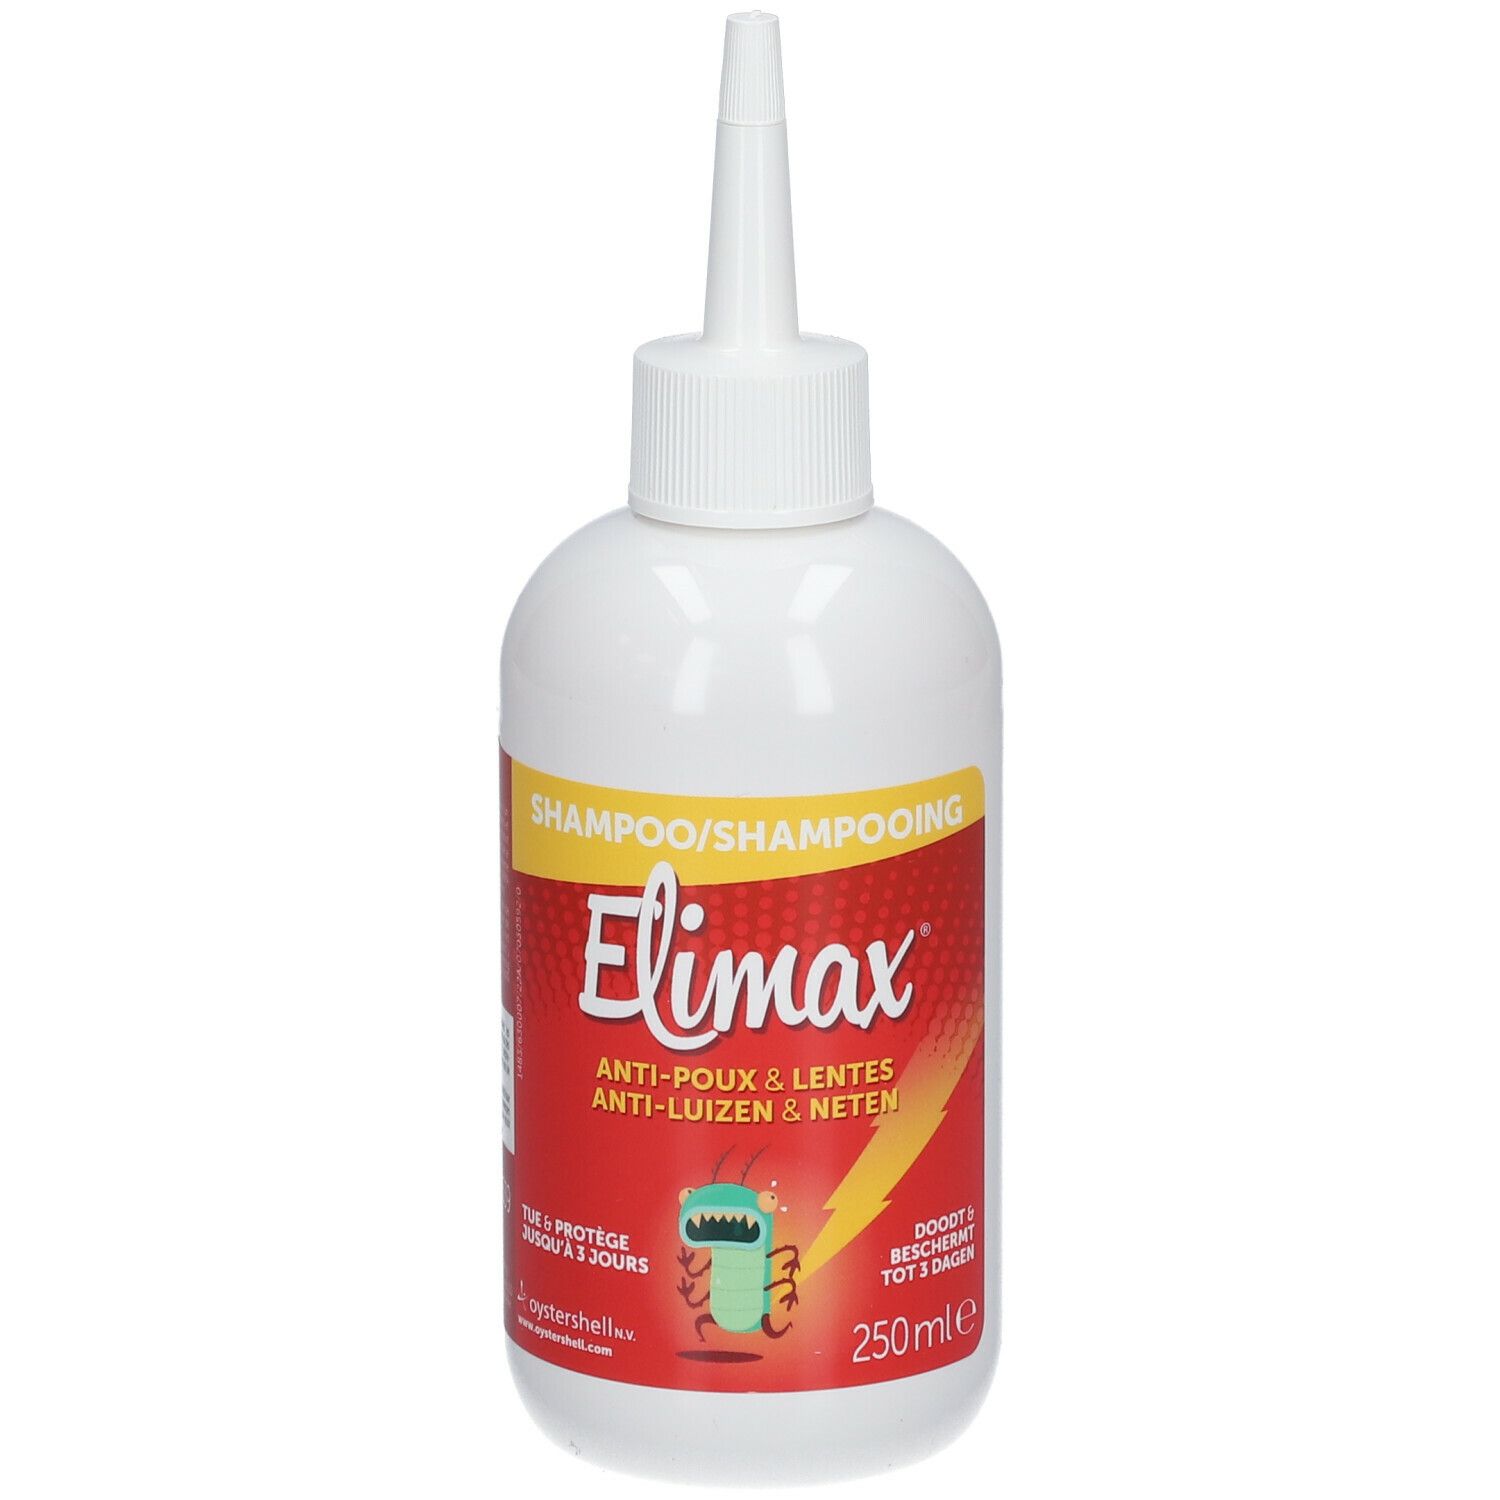 Elimax Shampooing Anti Poux